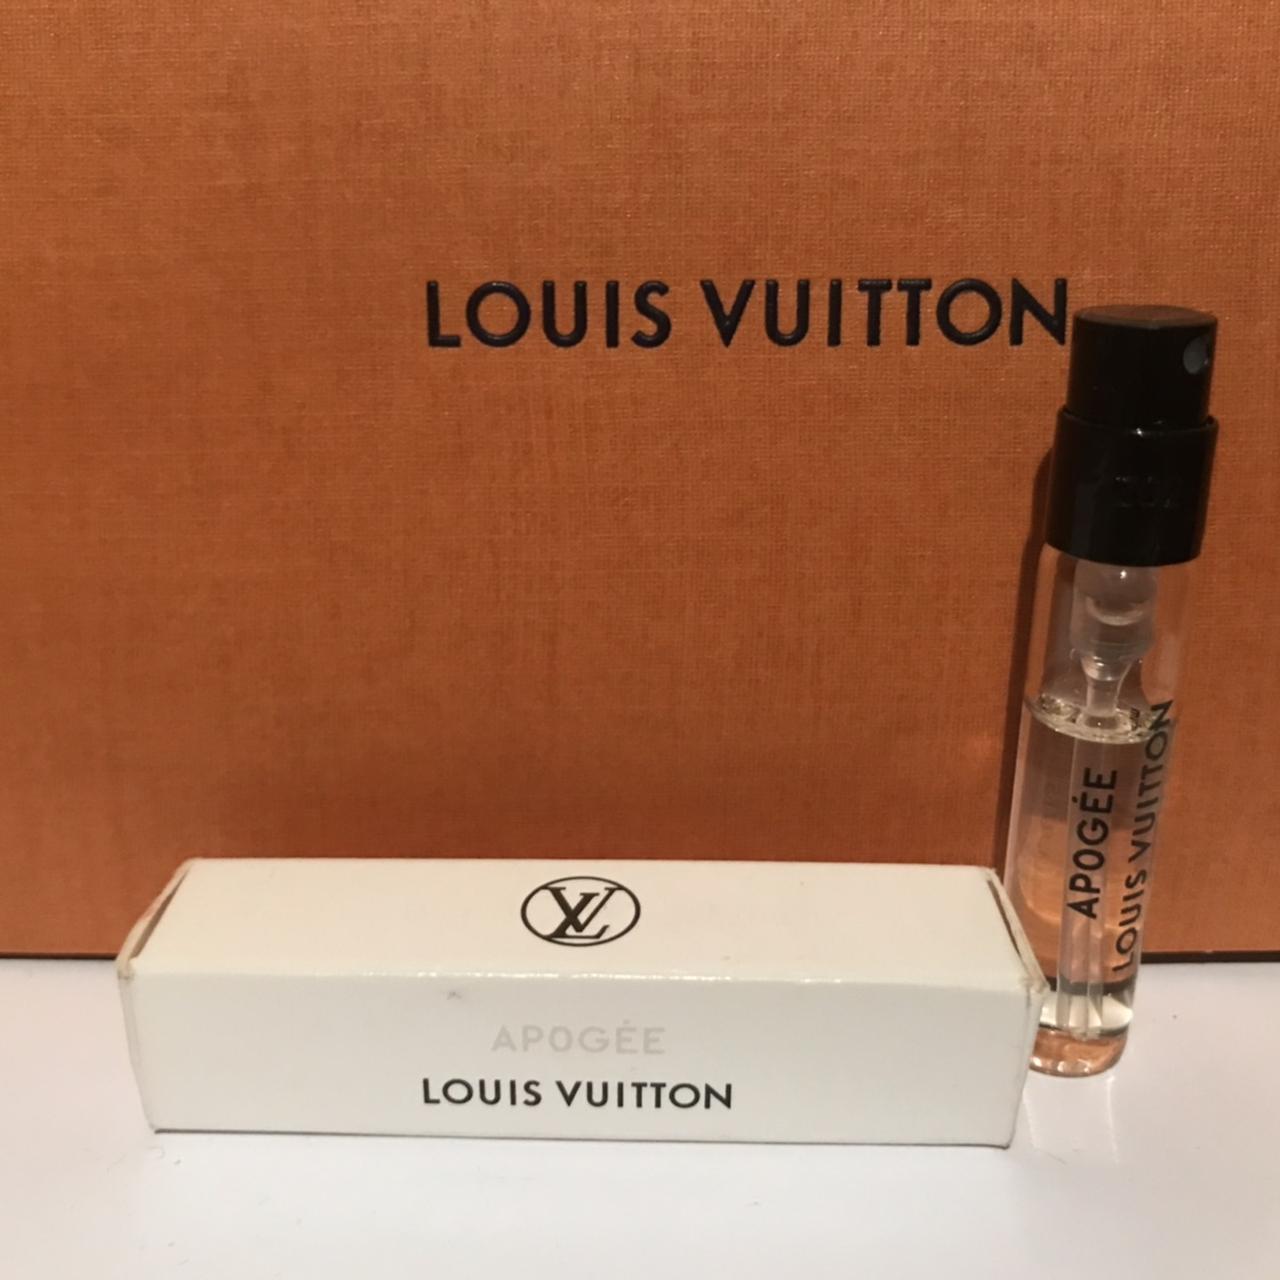 LOUIS VUITTON Apogee Fragrance  Louis vuitton, Fragrance, Vuitton